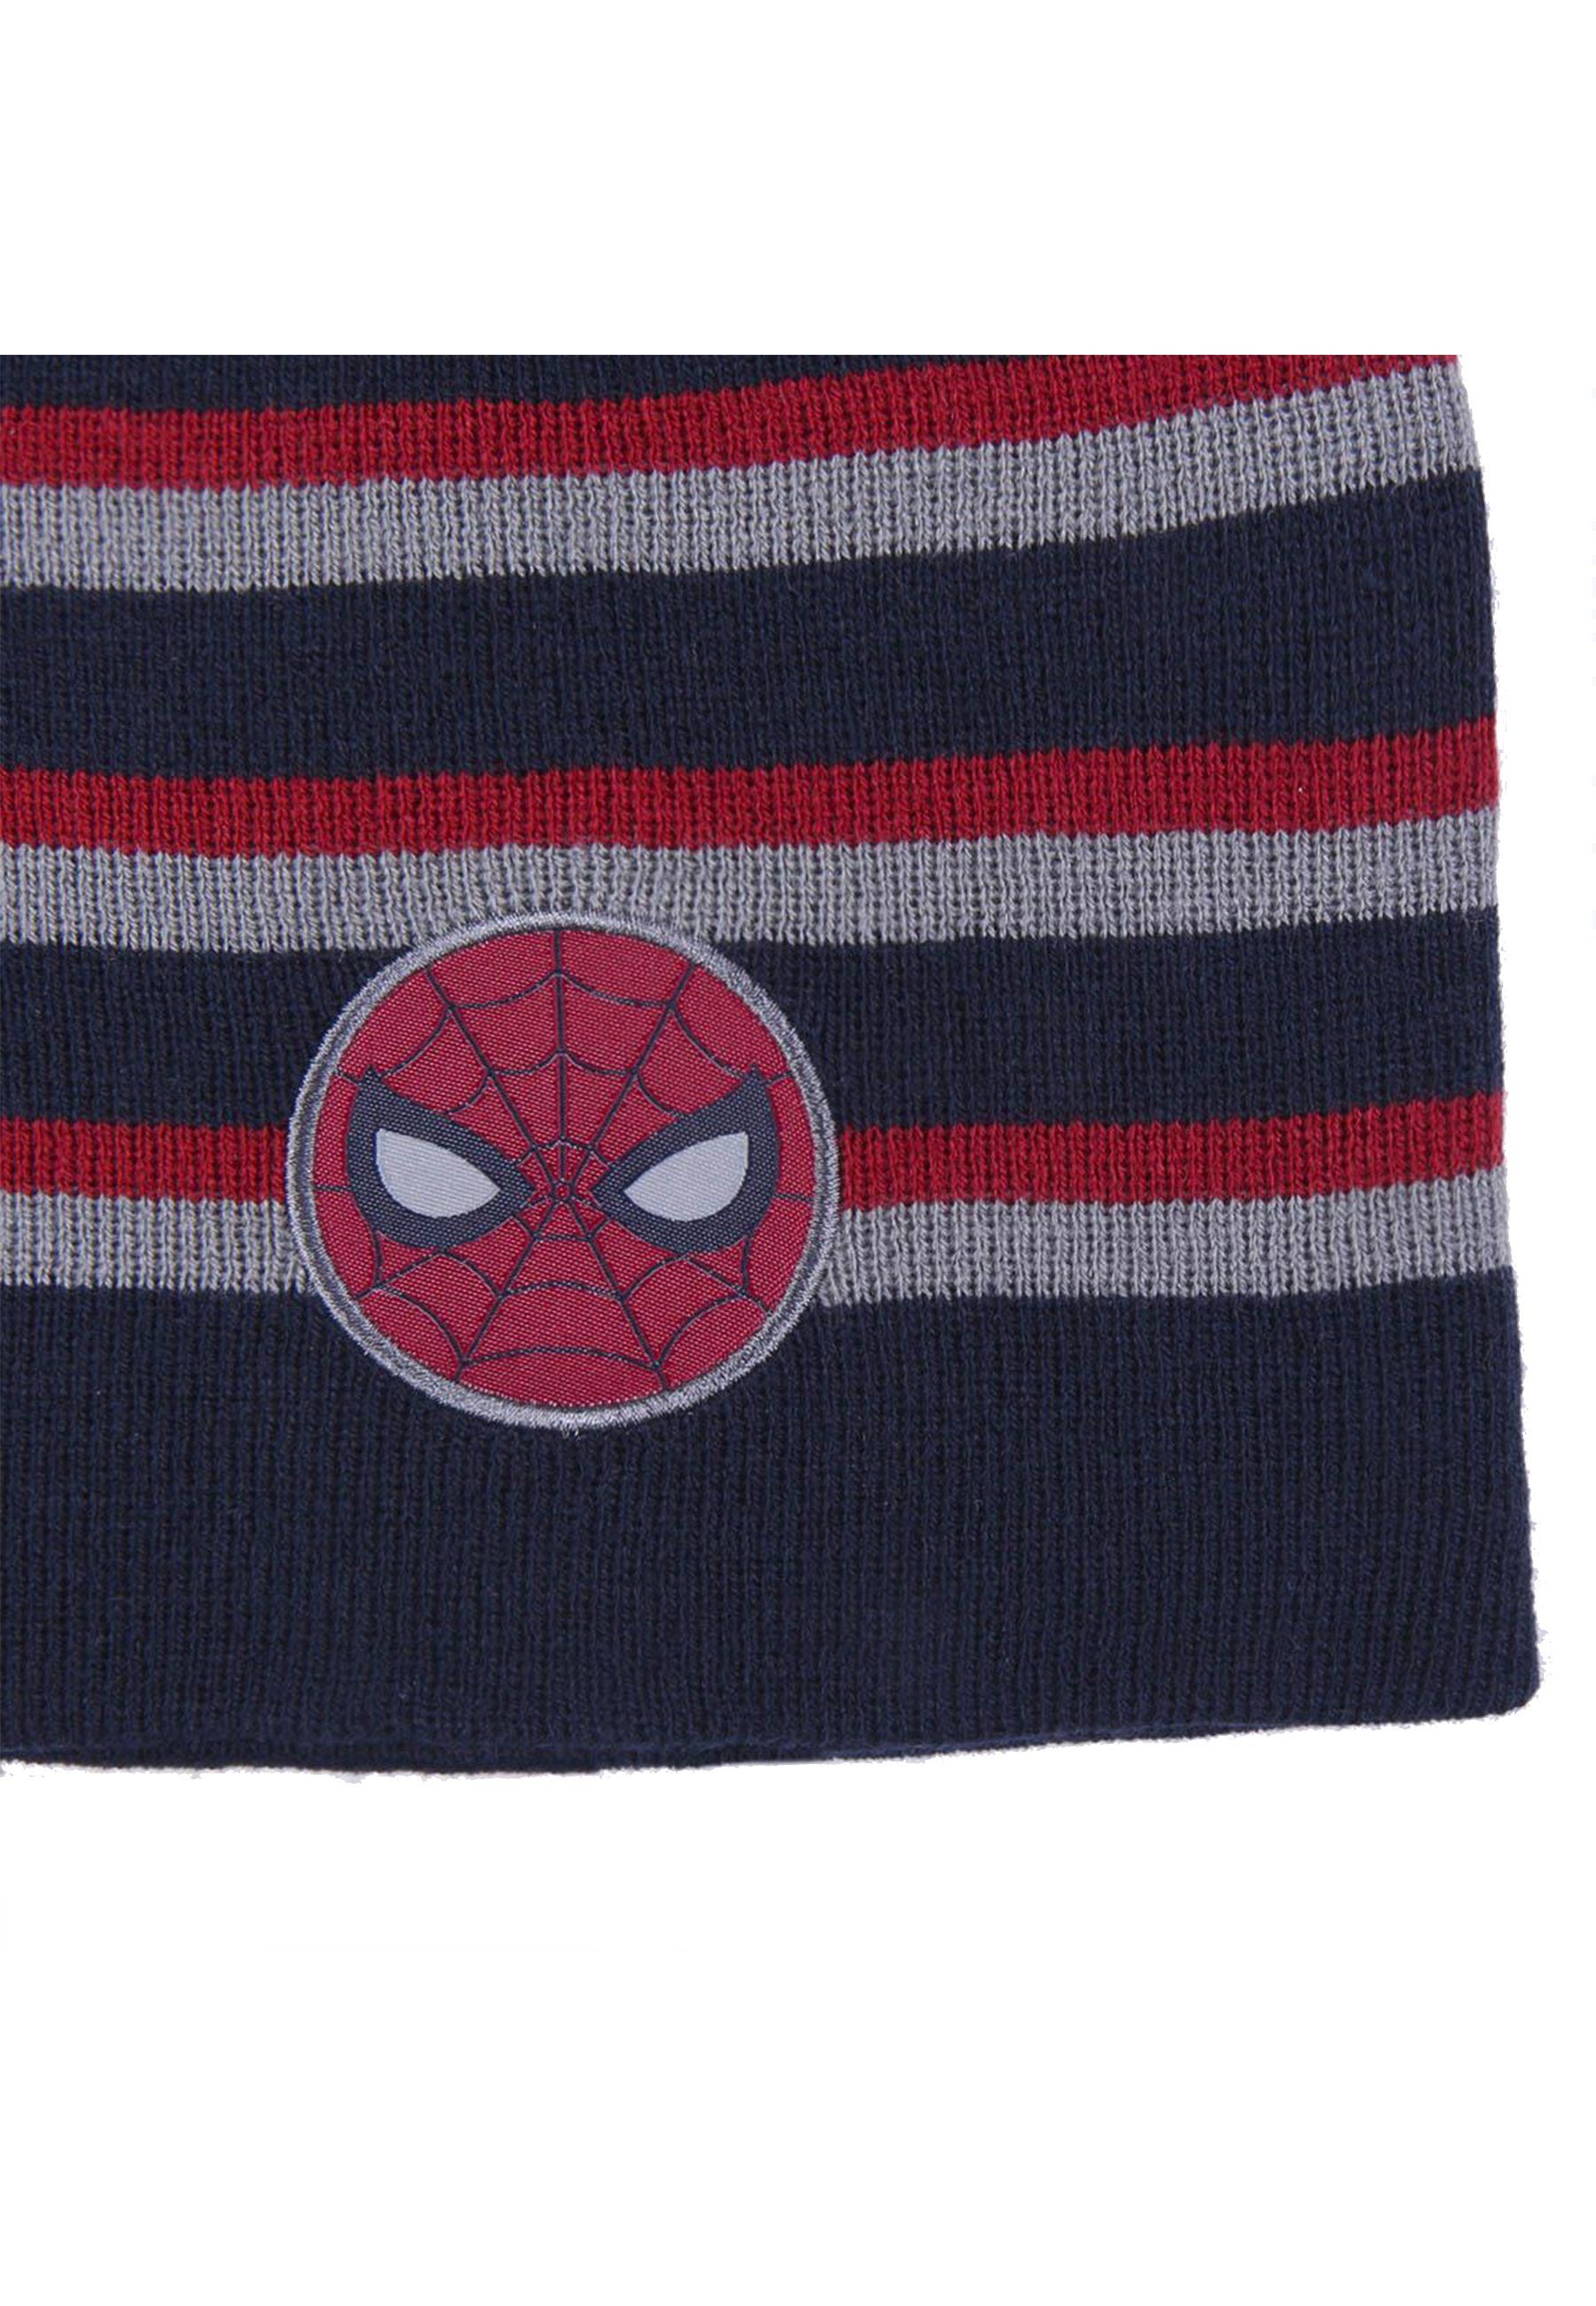 Beanie Kinder Spiderman Strickmützte Winter-Beanie-Mütze Jungen